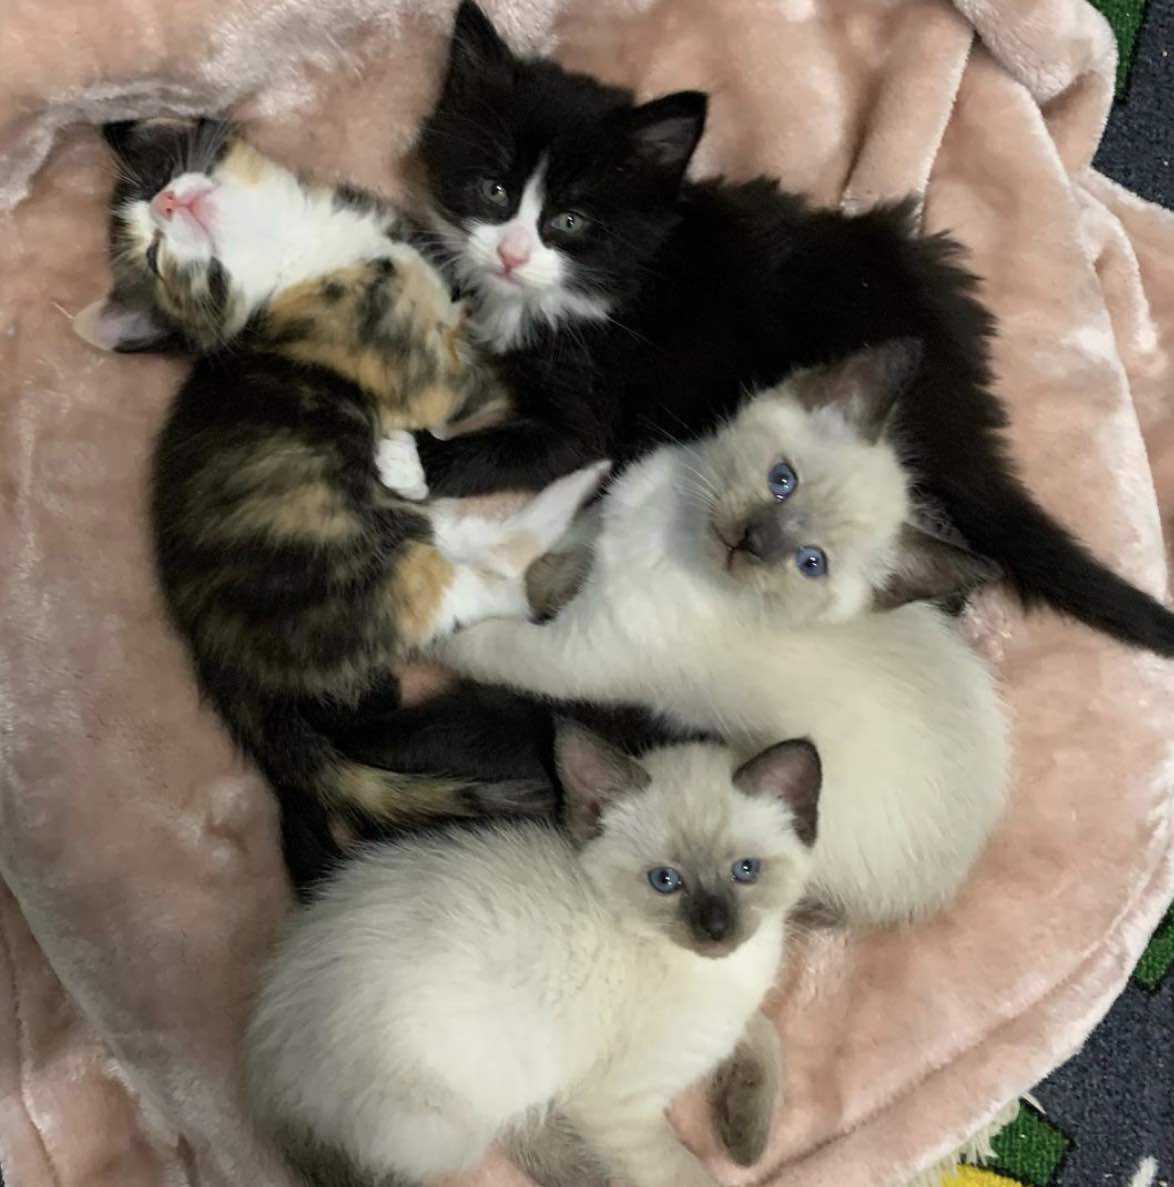 4 kittens